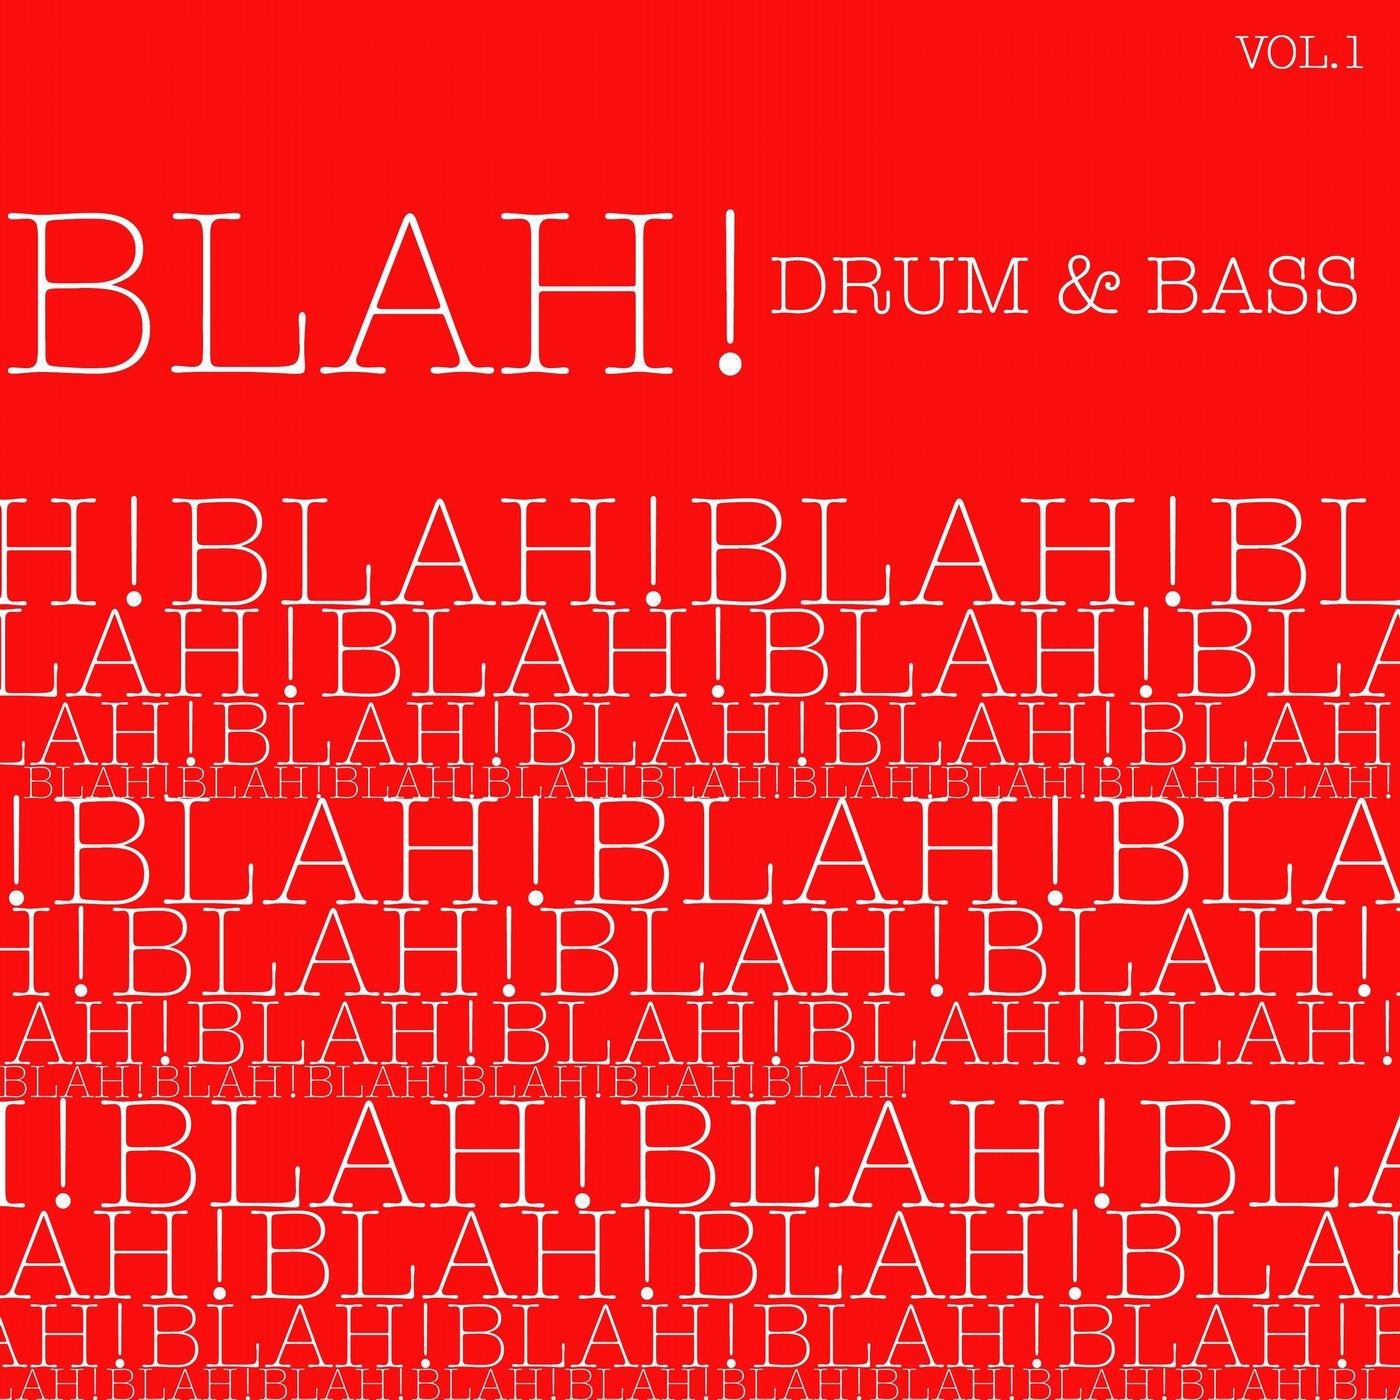 Blah! Drum & Bass, Vol. 1